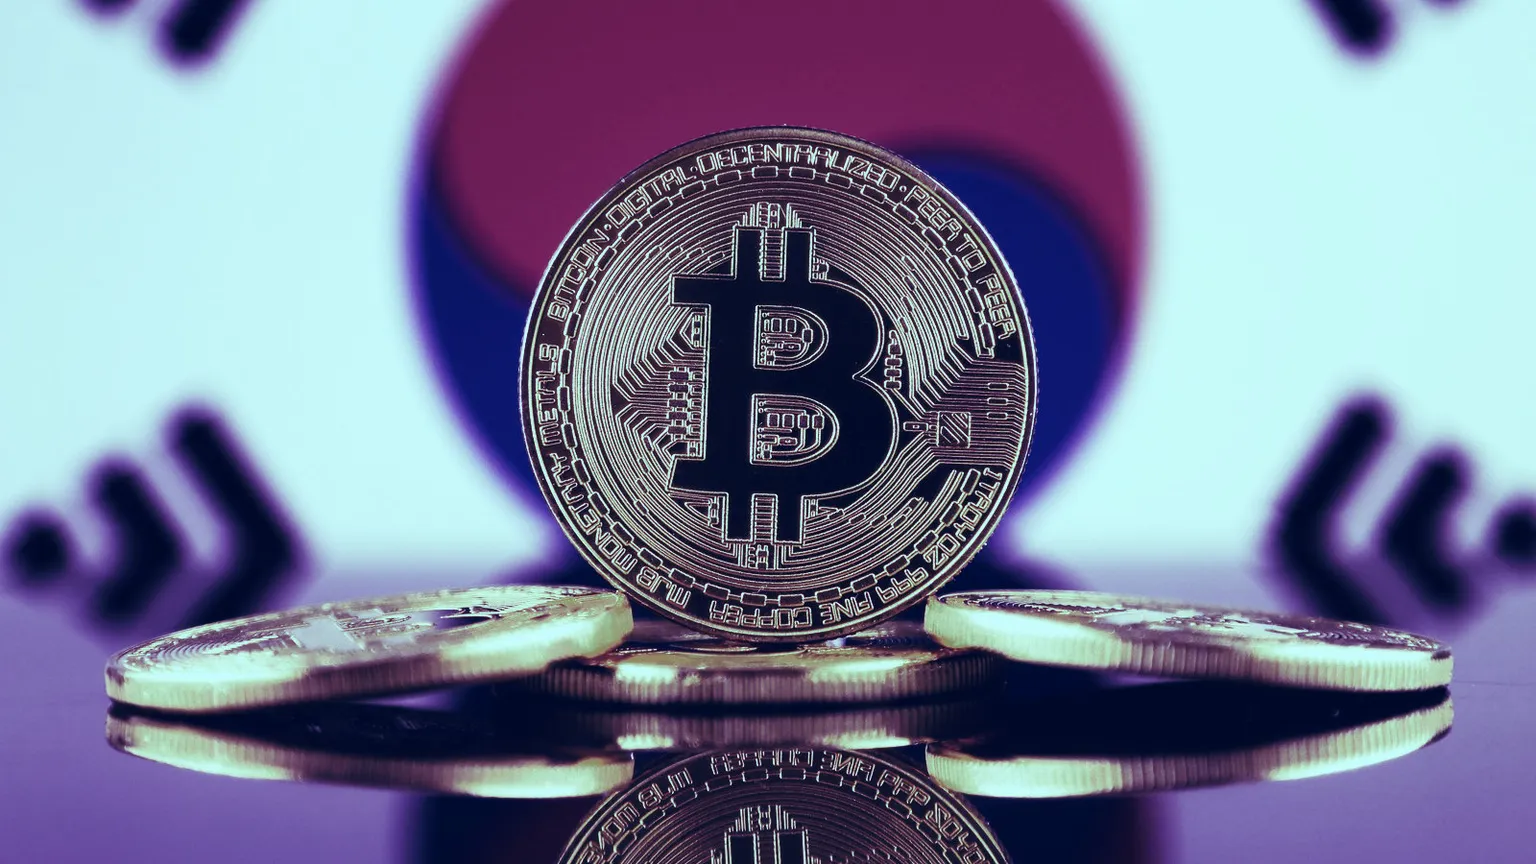 Corea del sur y Bitcoin. Imagen: Shutterstock